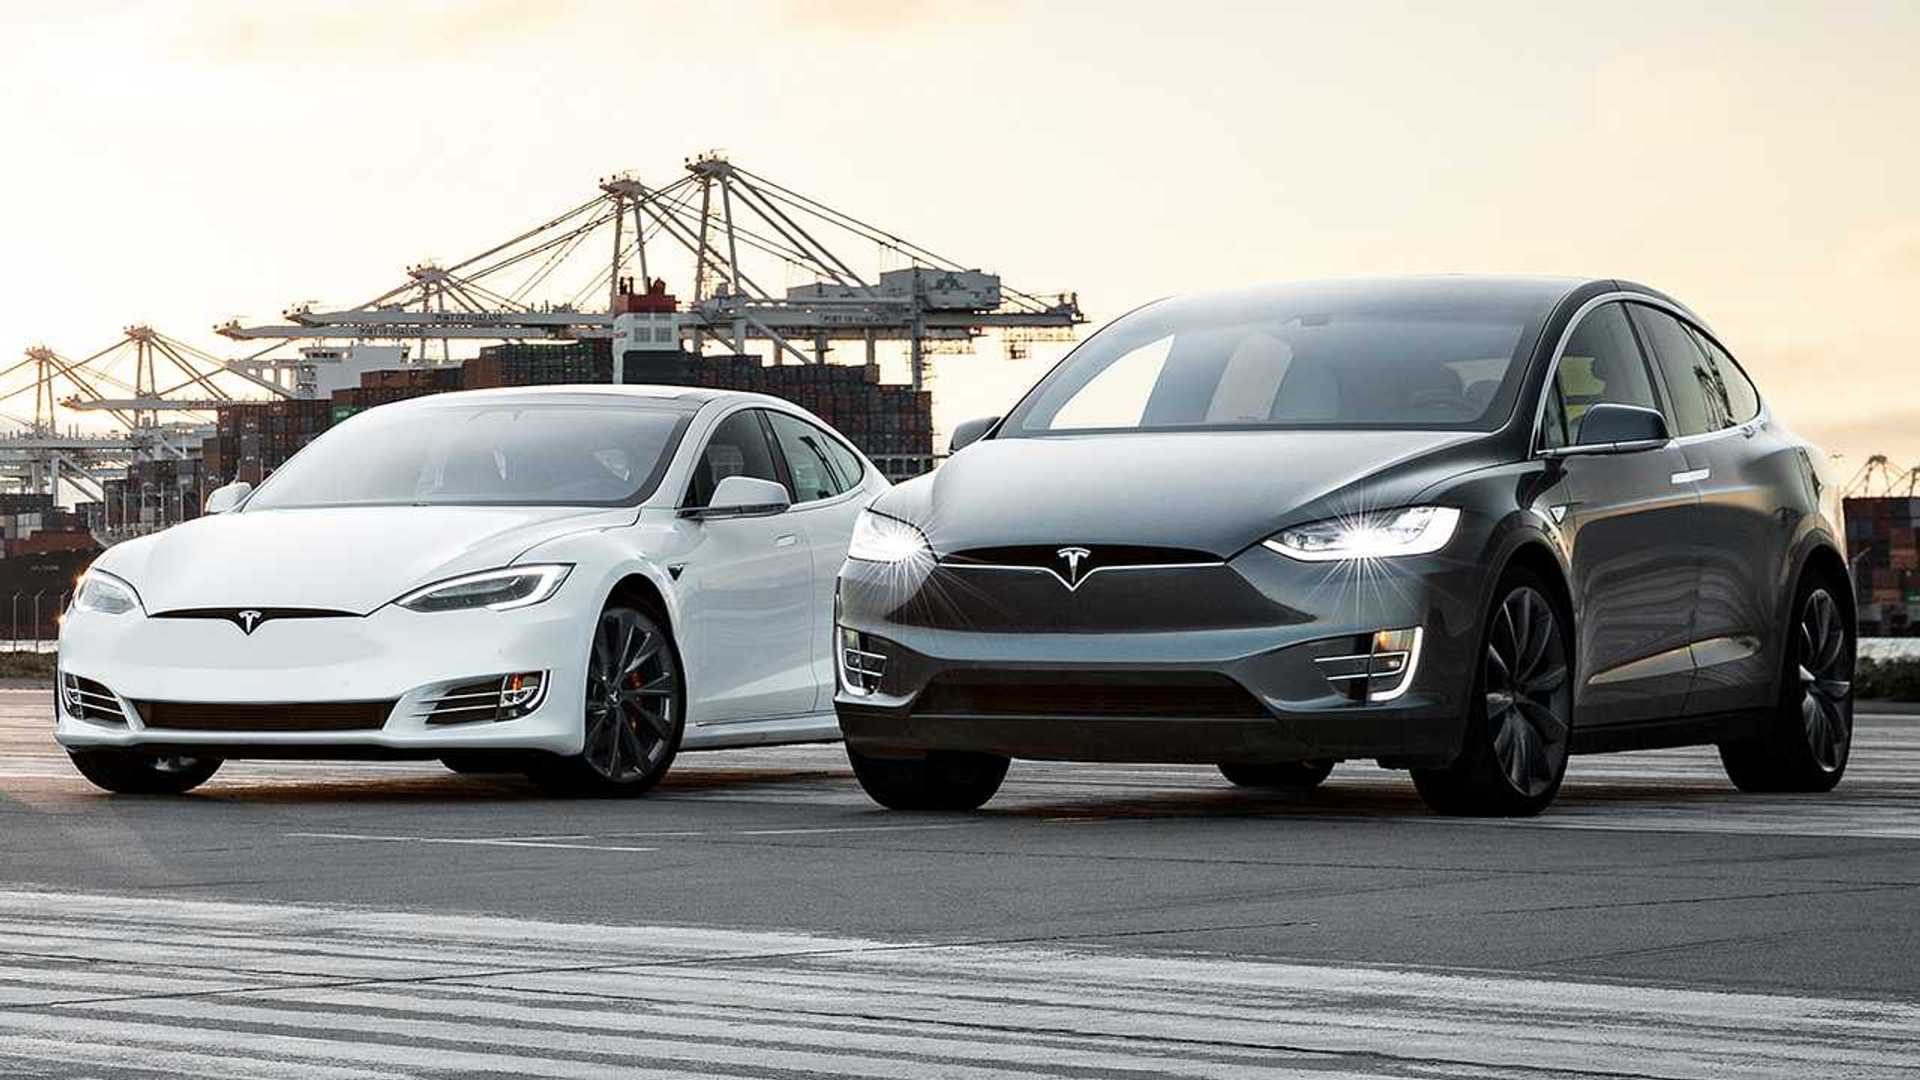 Tesla senkt erneut die Preise für Elektroautos - Model X sinkt um 10.000 Dollar, Model S um 5.000 Dollar